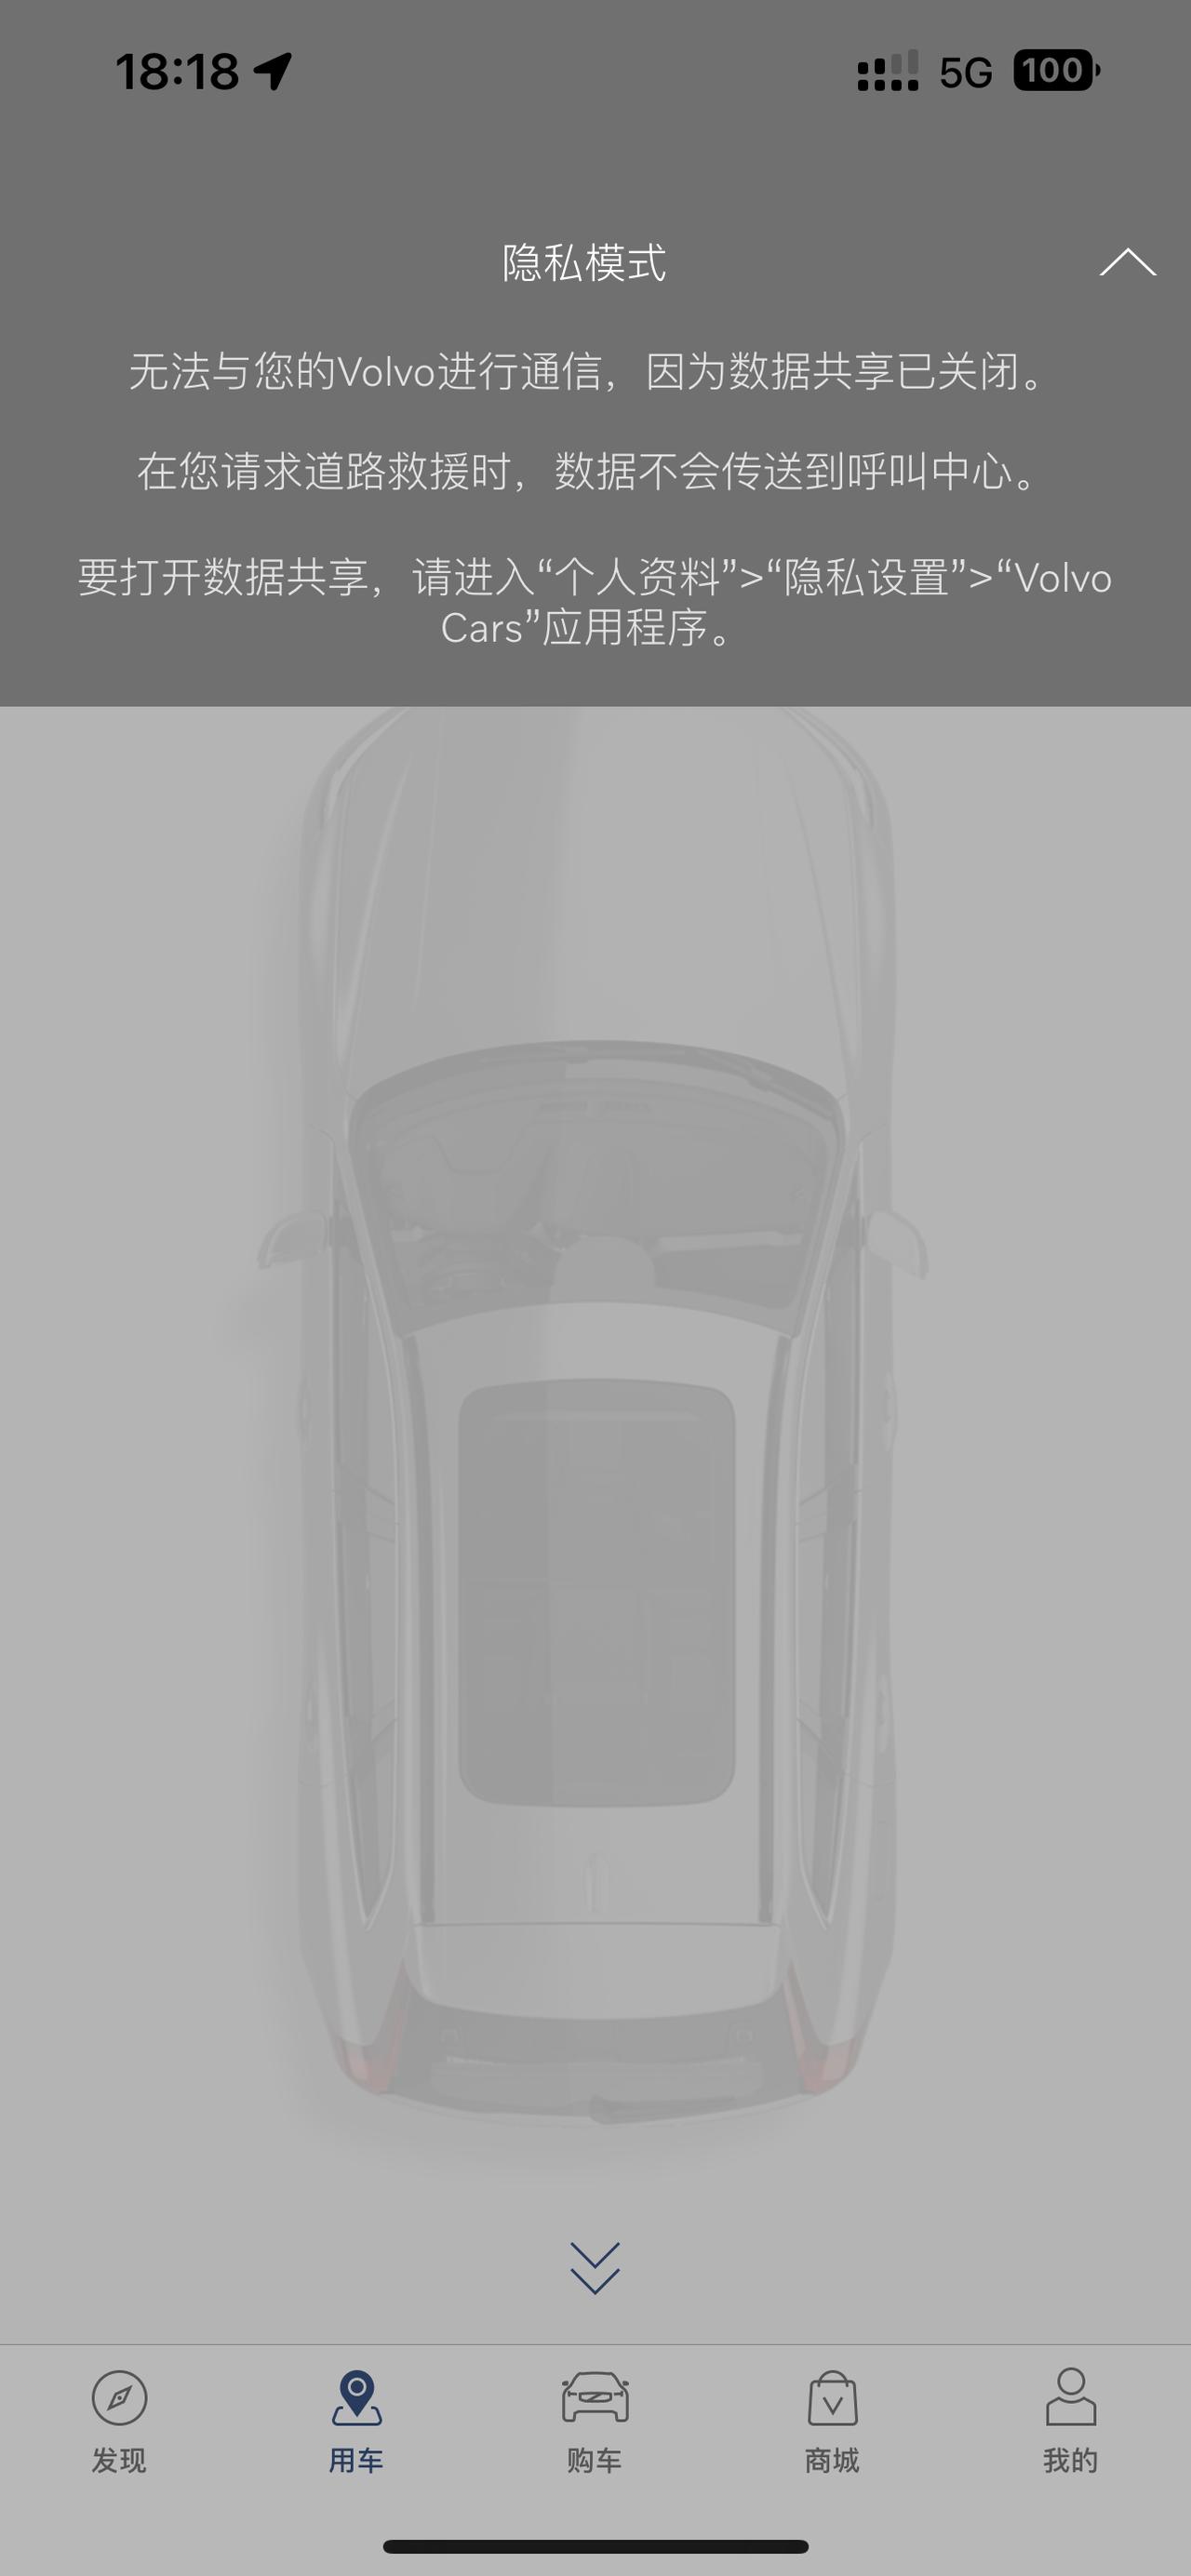 沃尔沃S90 ，ios app无法远程控制汽车。打开app 一直显示隐私模式，无法远程控制车子。按照提示不管在APP